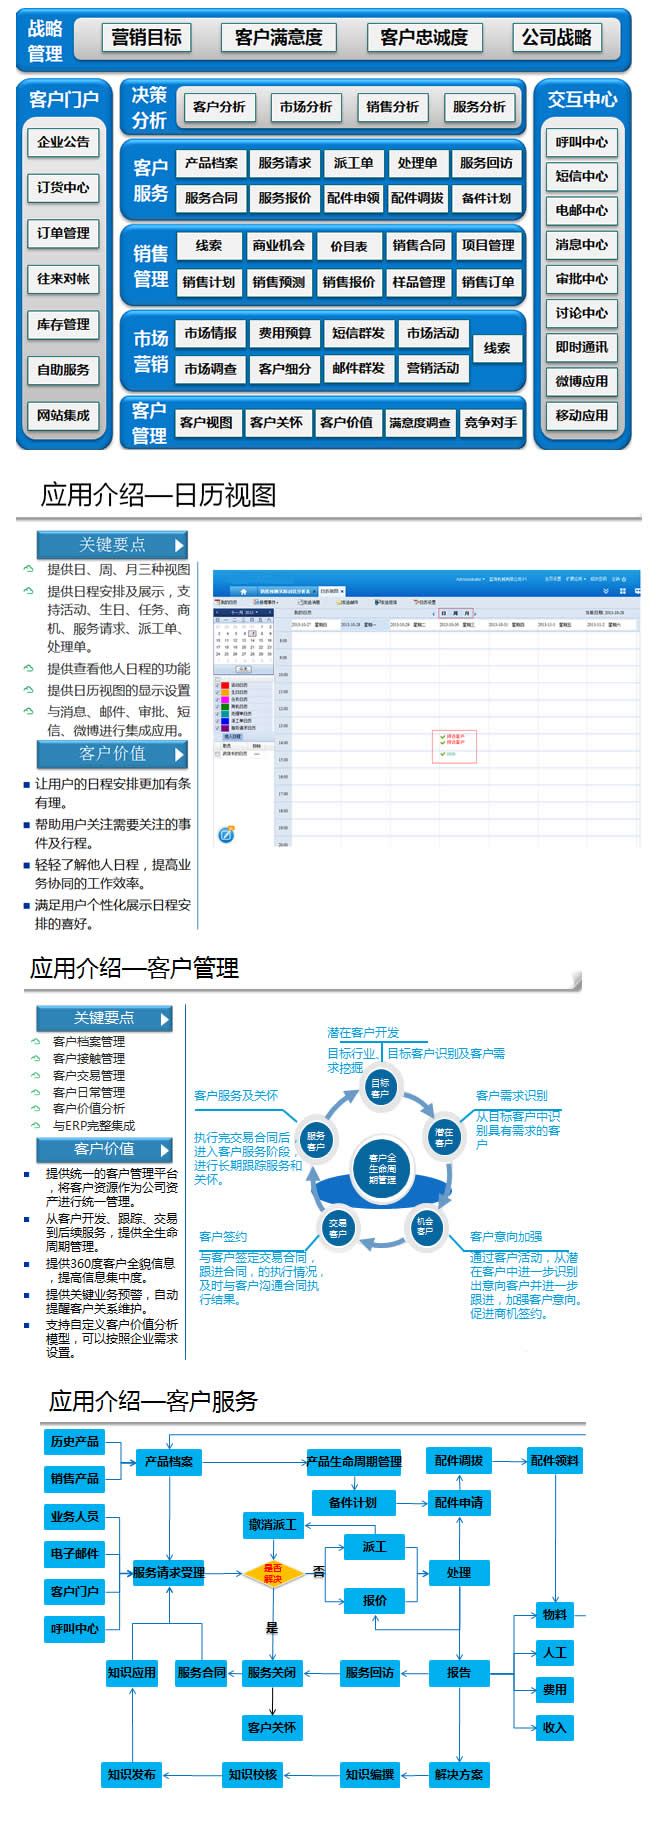 上海金蝶软件-分销管理